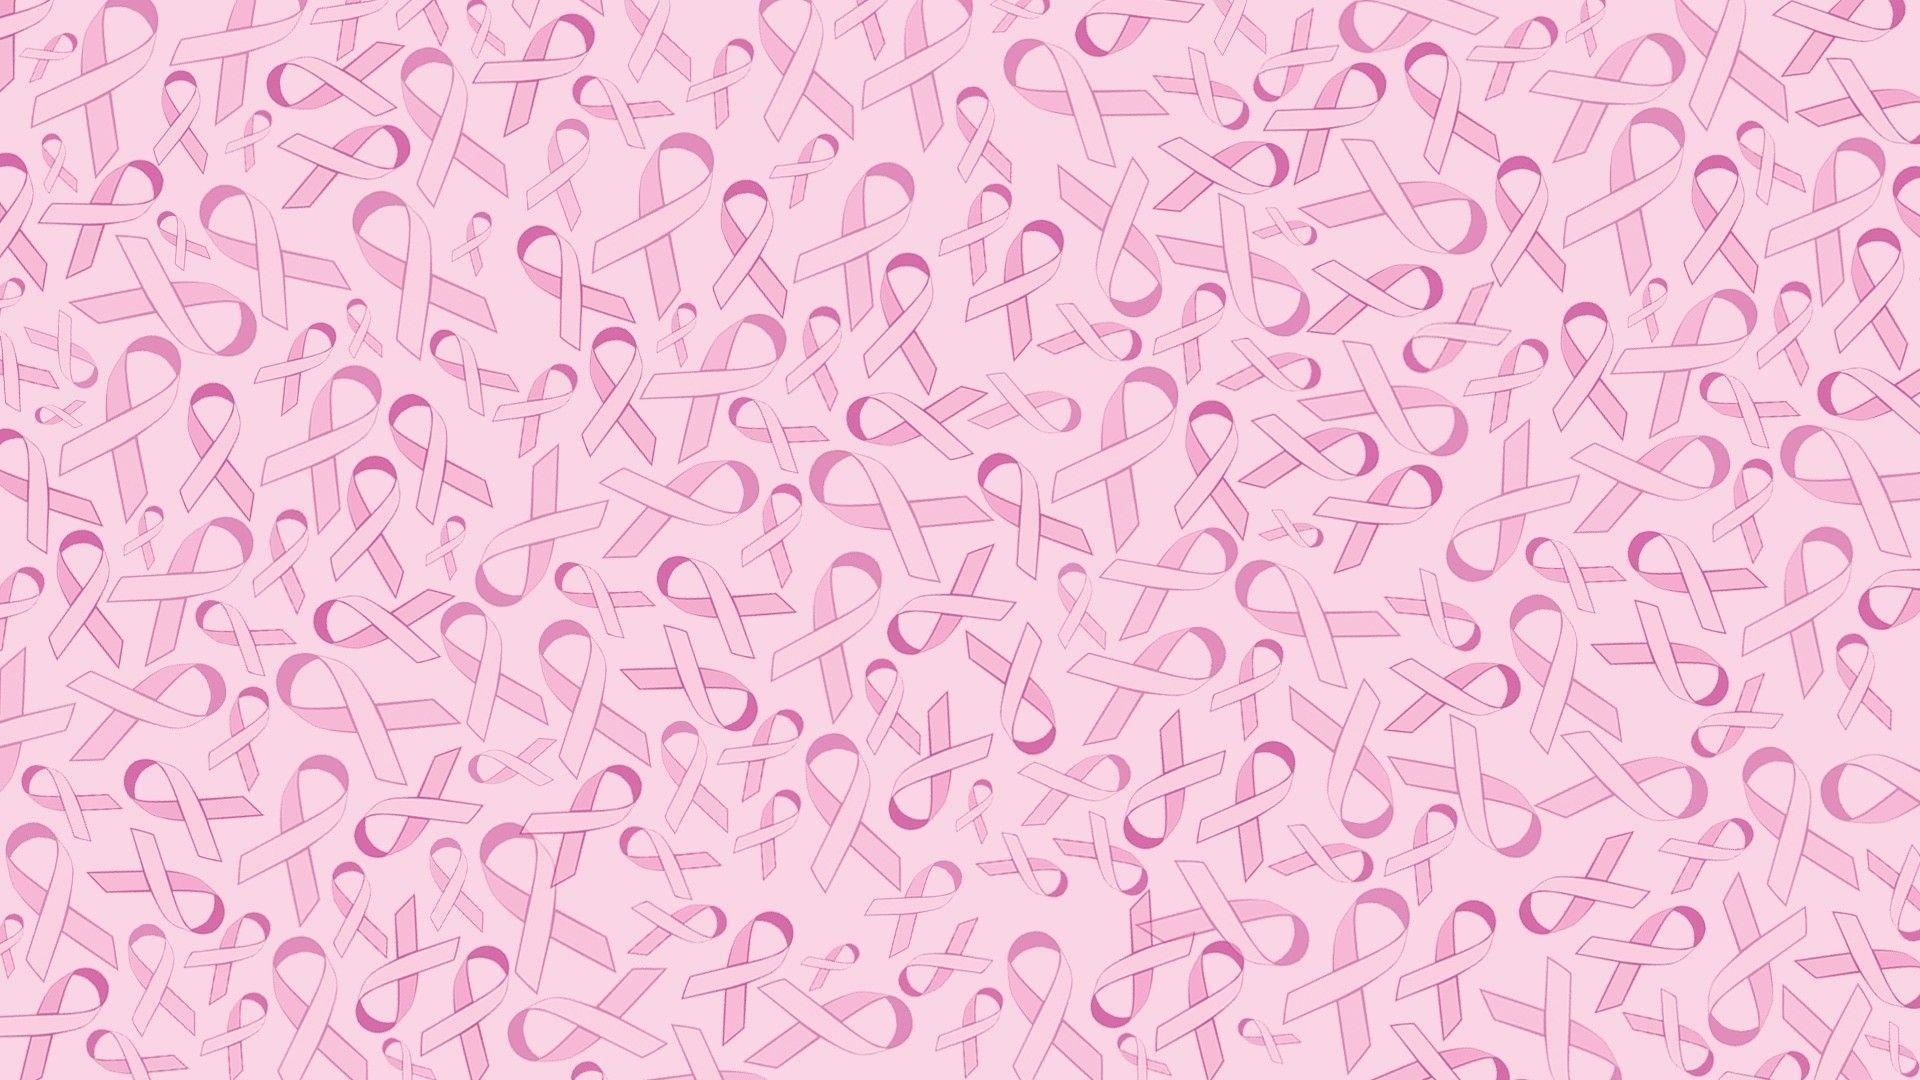 Hình nền cờ hội chống ung thư sẽ làm cho máy tính của bạn trông thật phong cách và truyền tải thông điệp quan trọng về sự kiện từ thiện này. Hãy thưởng thức những hình nền sáng tạo với các họa tiết hoa hồng và biểu tượng nơ hồng đặc trưng của chiến dịch chống ung thư vú.